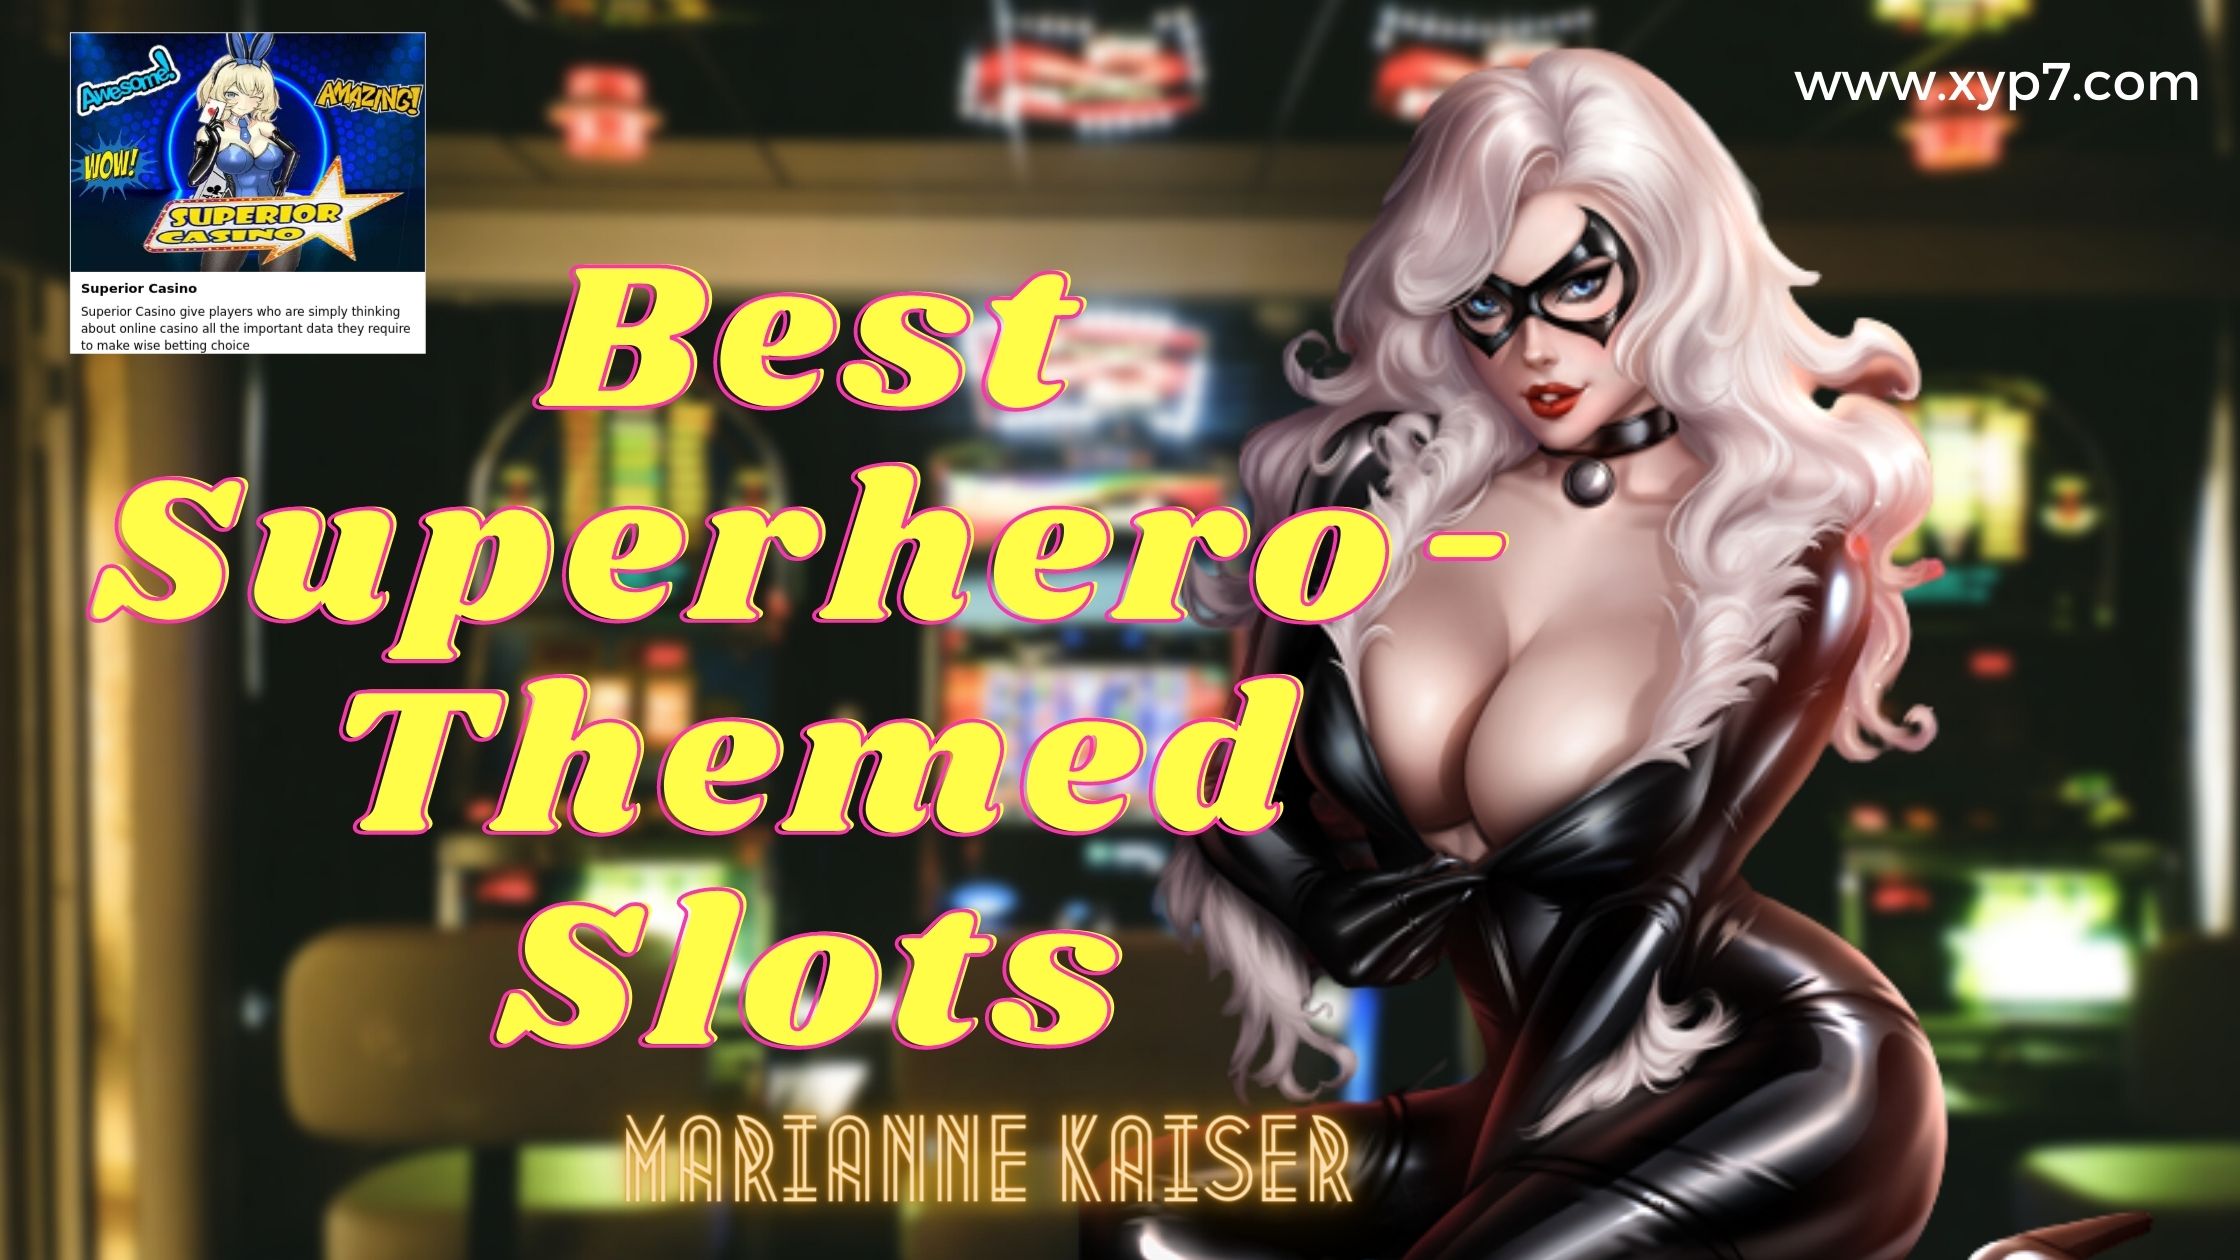 Best superheroes-Themed Slots